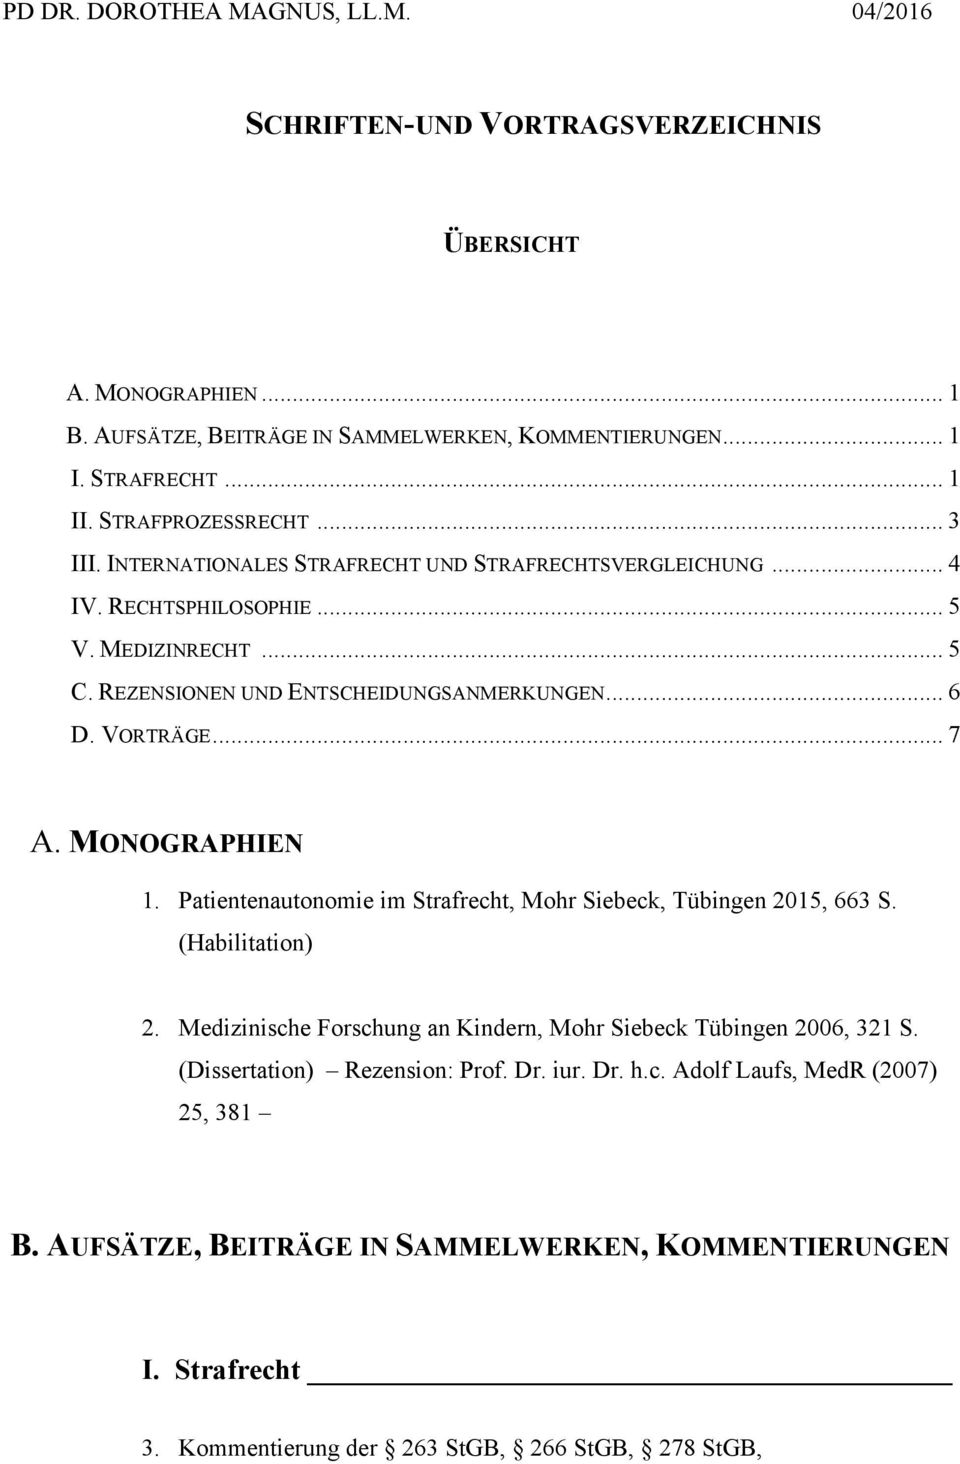 VORTRÄGE... 7 A. MONOGRAPHIEN 1. Patientenautonomie im Strafrecht, Mohr Siebeck, Tübingen 2015, 663 S. (Habilitation) 2. Medizinische Forschung an Kindern, Mohr Siebeck Tübingen 2006, 321 S.